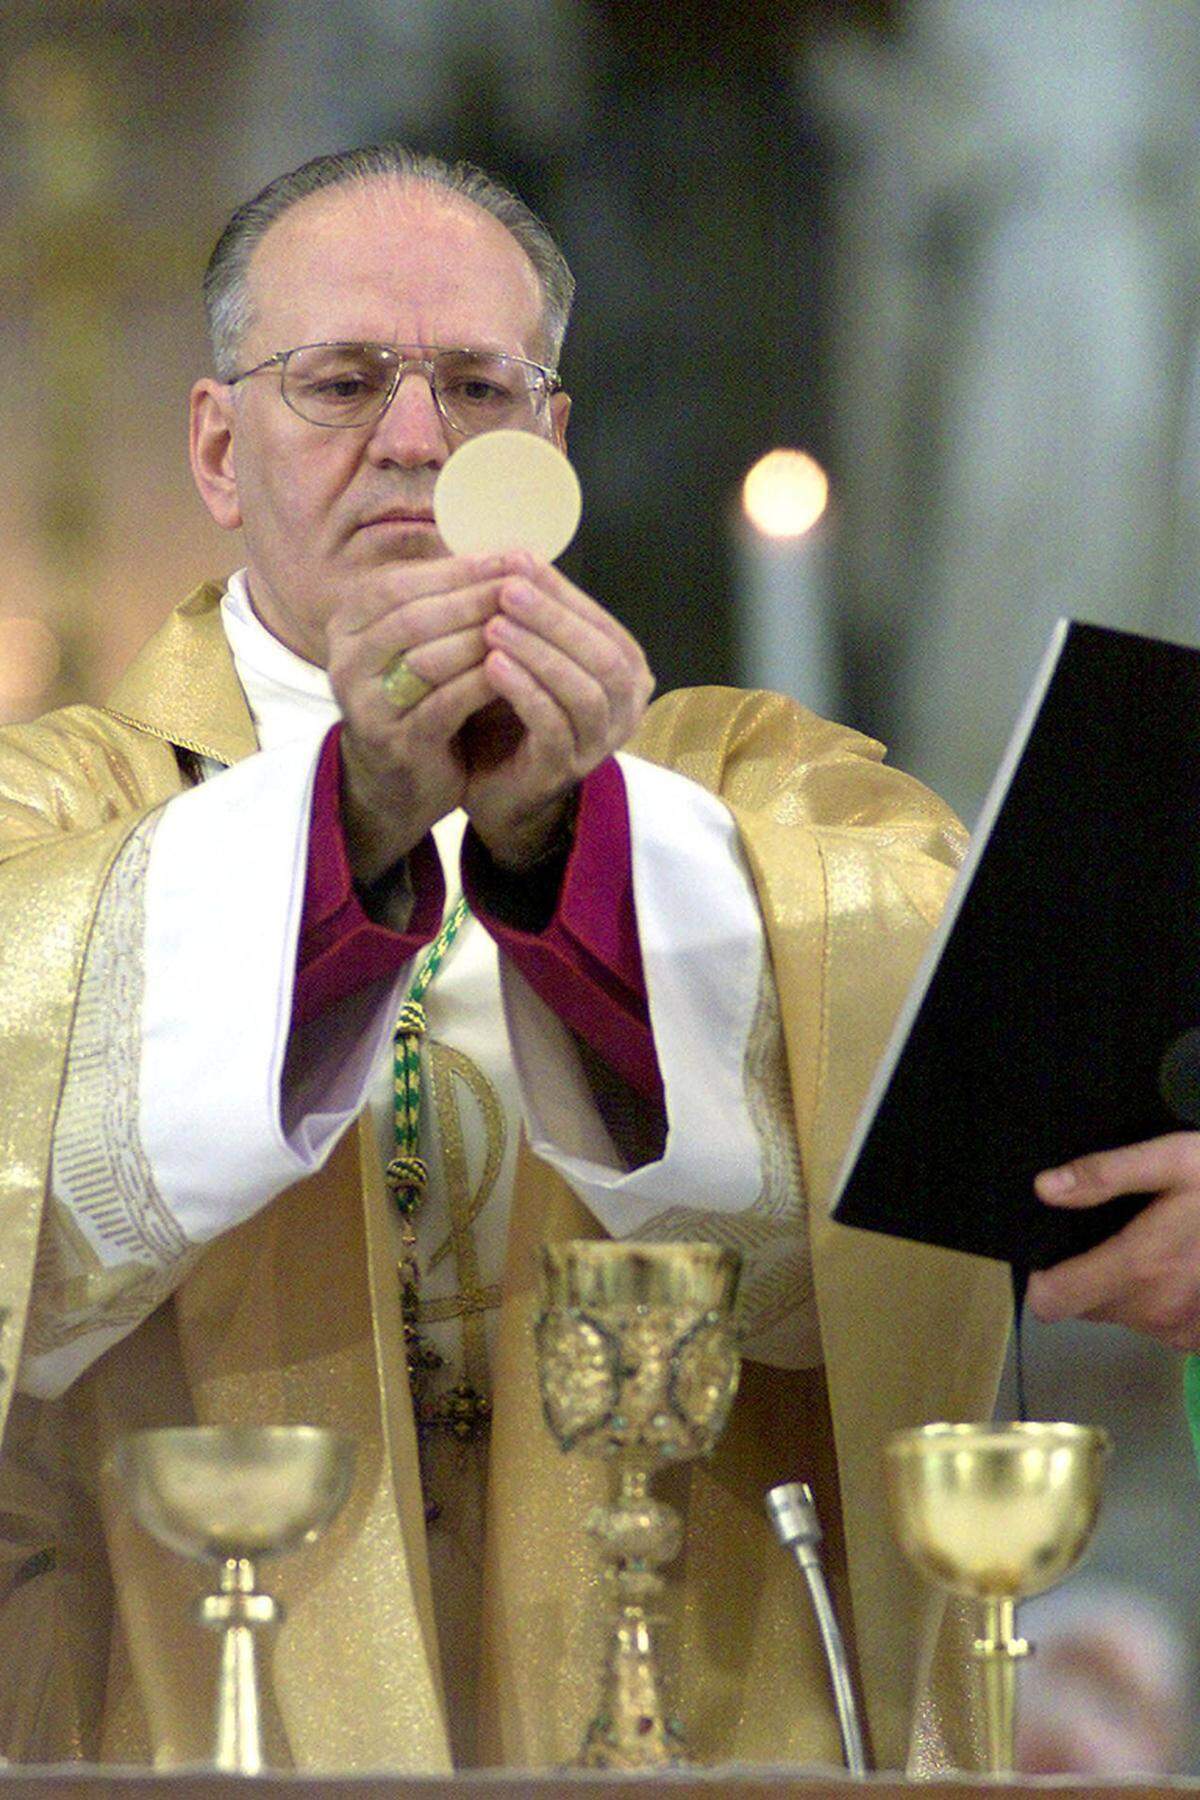 Ein anderer Name, der derzeit immer wieder zu hören ist, lautet Peter Erdö. Der 60-jährige Ungar ist seit 2003 Erzbischof von Esztergom-Budapest; damit ist er auch Primas des Landes. Im Jahr 2006 wurde er zum Präsidenten des Rats der Europäischen Bischofskonferenzen bestellt.